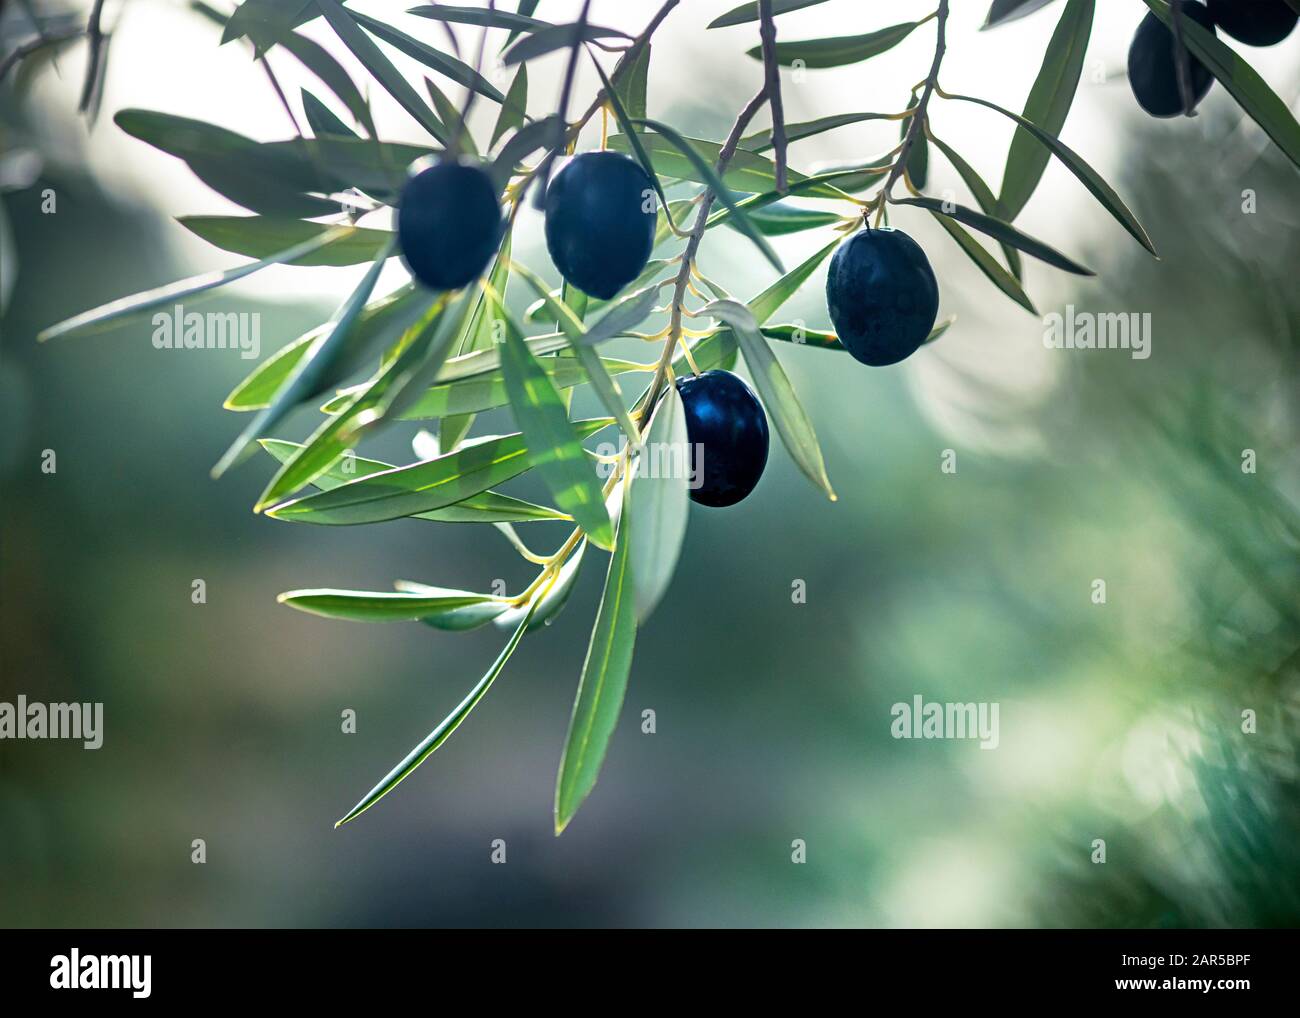 Atmosphärisches künstlerisches Bild von gesunden schwarzen Oliven, die an einem Baum hängen und in selektivem Fokus verschwommener Hintergrund für Kopienraum und Text aufgenommen werden Stockfoto